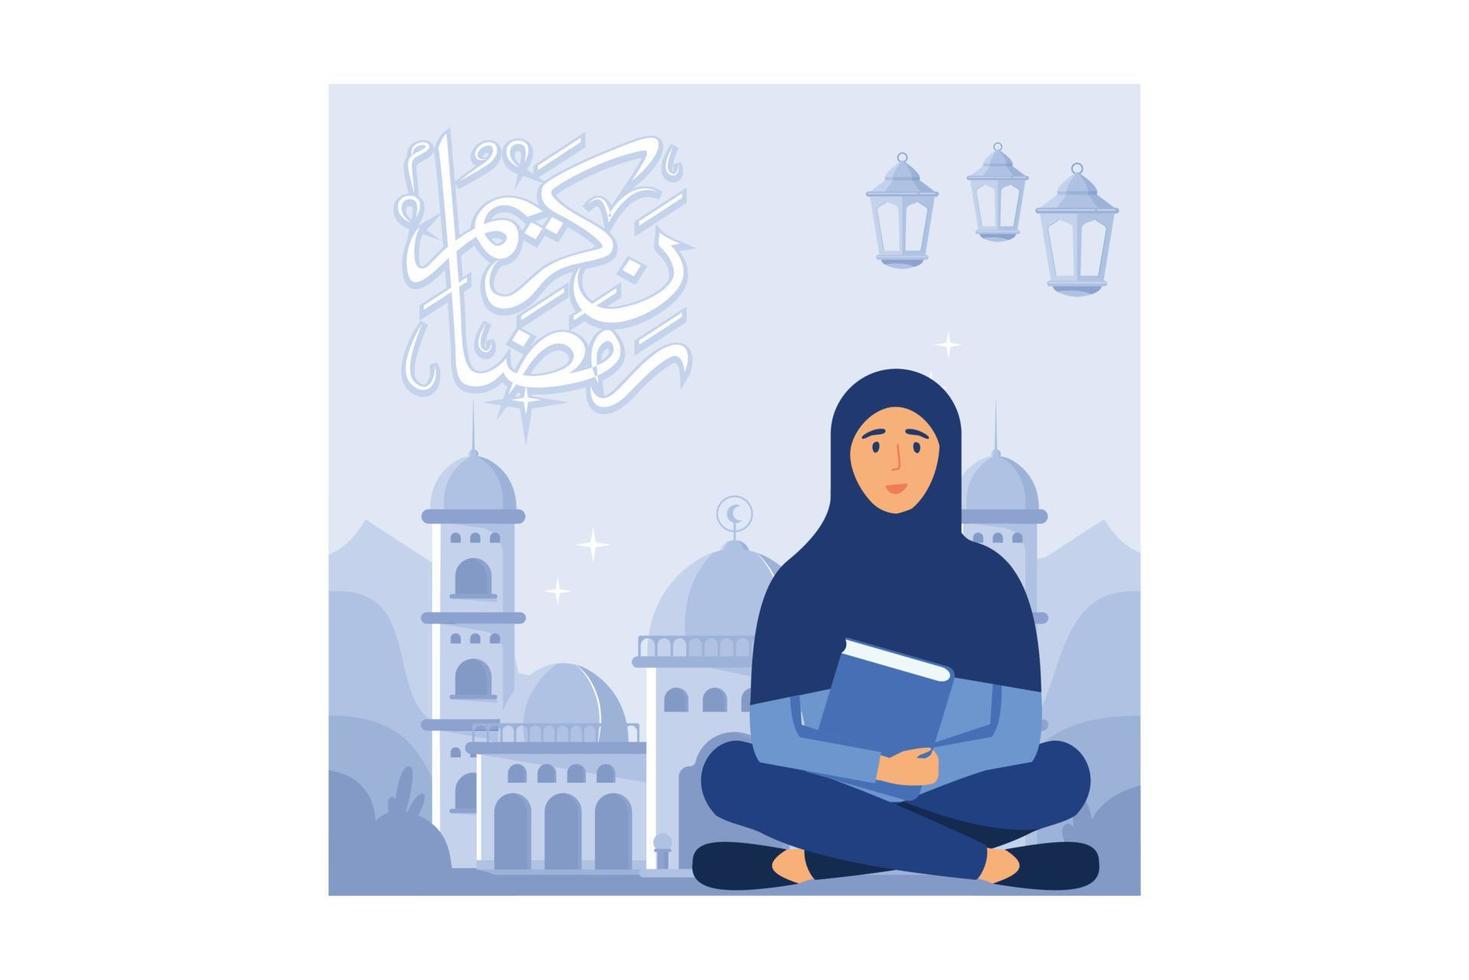 leggendo il concetto di design piatto del sacro corano. donne che leggono il Corano nel mese del ramadan, musulmani che recitano versi. può essere utilizzato per pagina di destinazione web, banner, interfaccia utente. illustrazione vettoriale